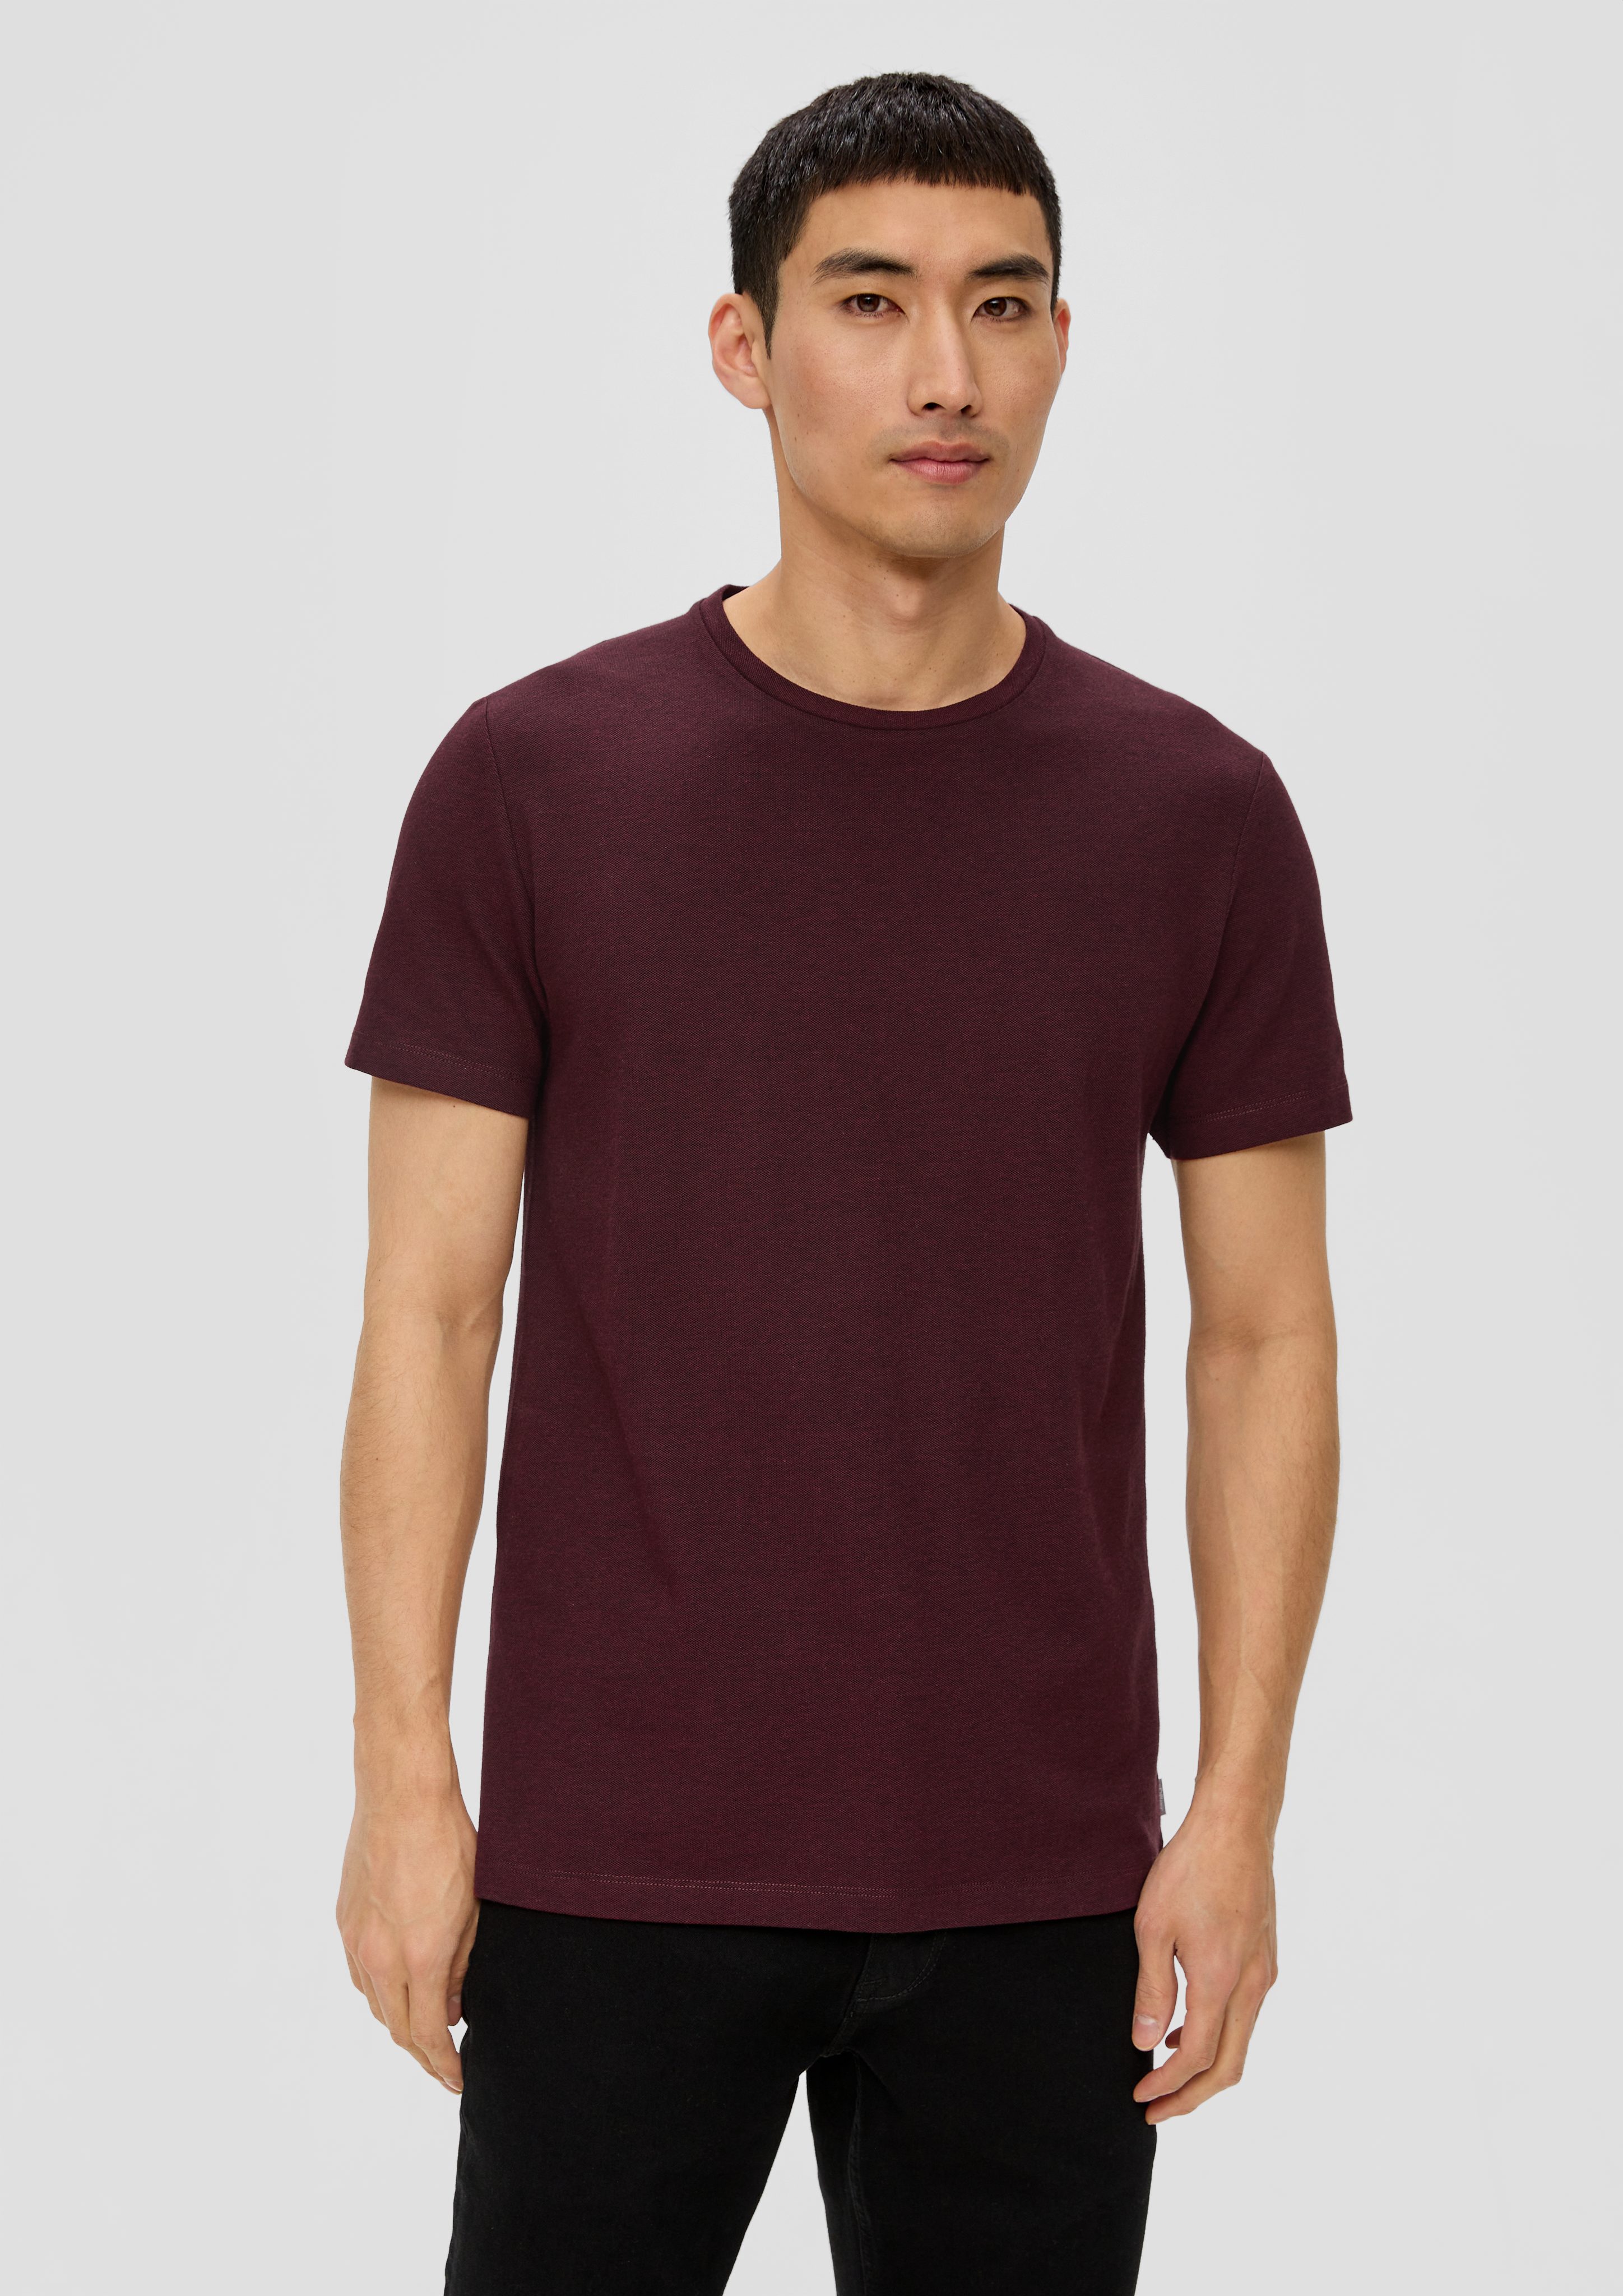 s.Oliver Kurzarmshirt T-Shirt mit Blende Piqué-Struktur bordeaux